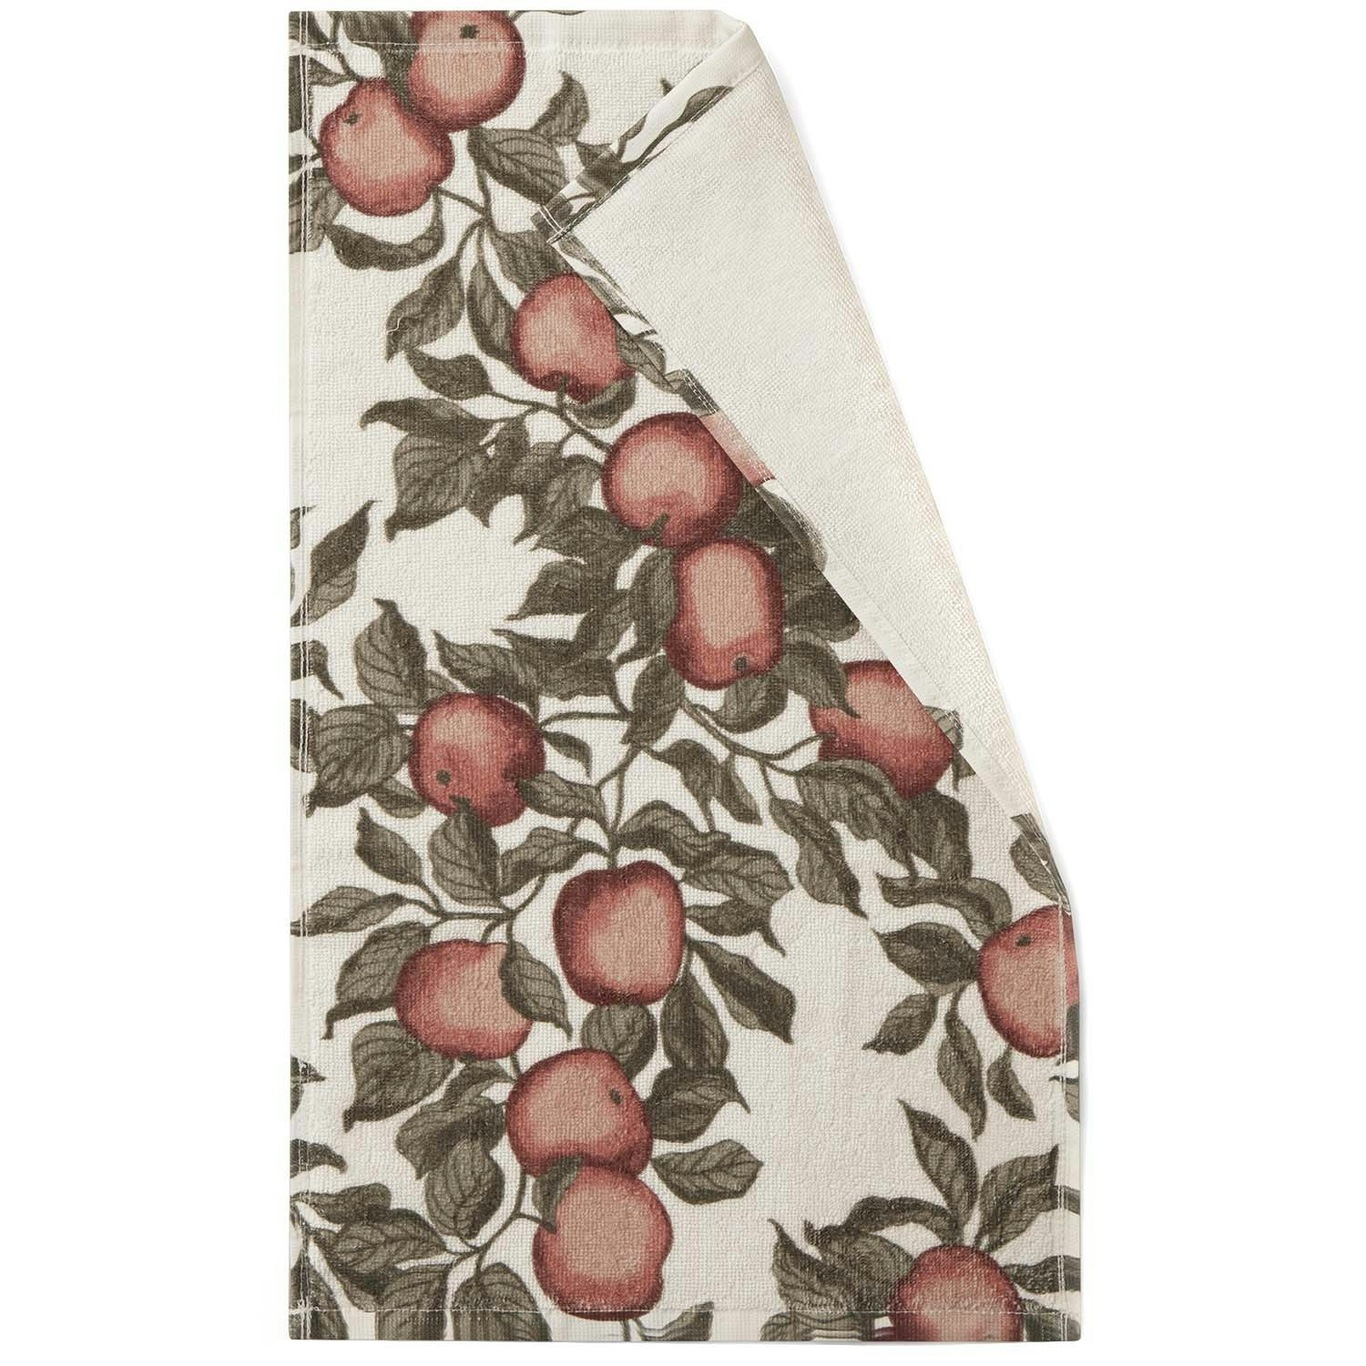 Pomme Gæstehåndklæder 2-pak, 30x50 cm